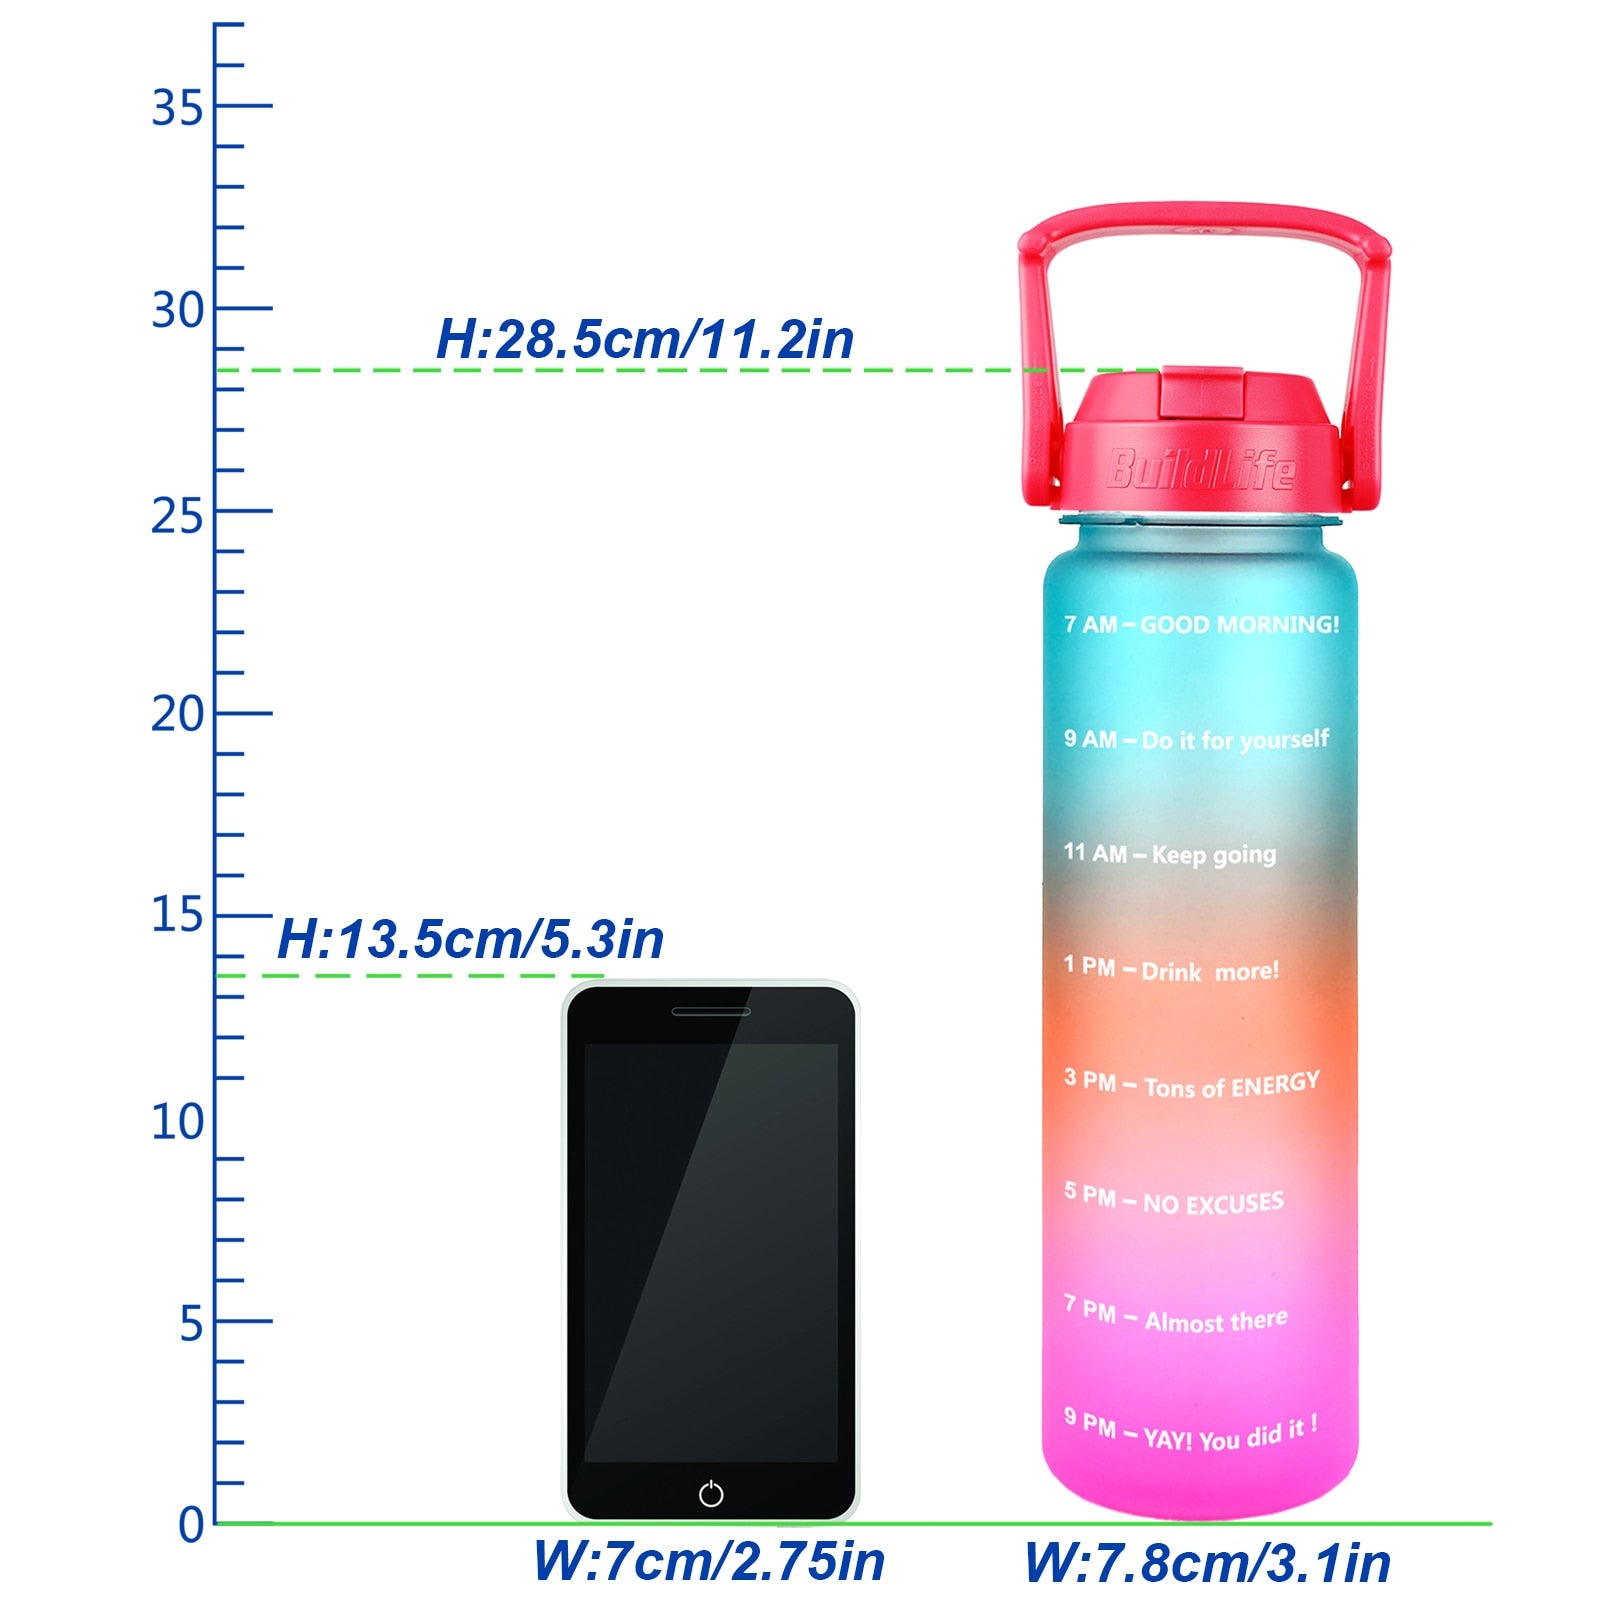 Eine Grafik zeigt eine farbverlaufende Sporttrinkflasche neben einer Massskala mit Groessenangaben. Die Flasche ist mit motivierenden Zeitmarkierungen versehen. Neben der Flasche ist zur Groessenreferenz ein Smartphone abgebildet.